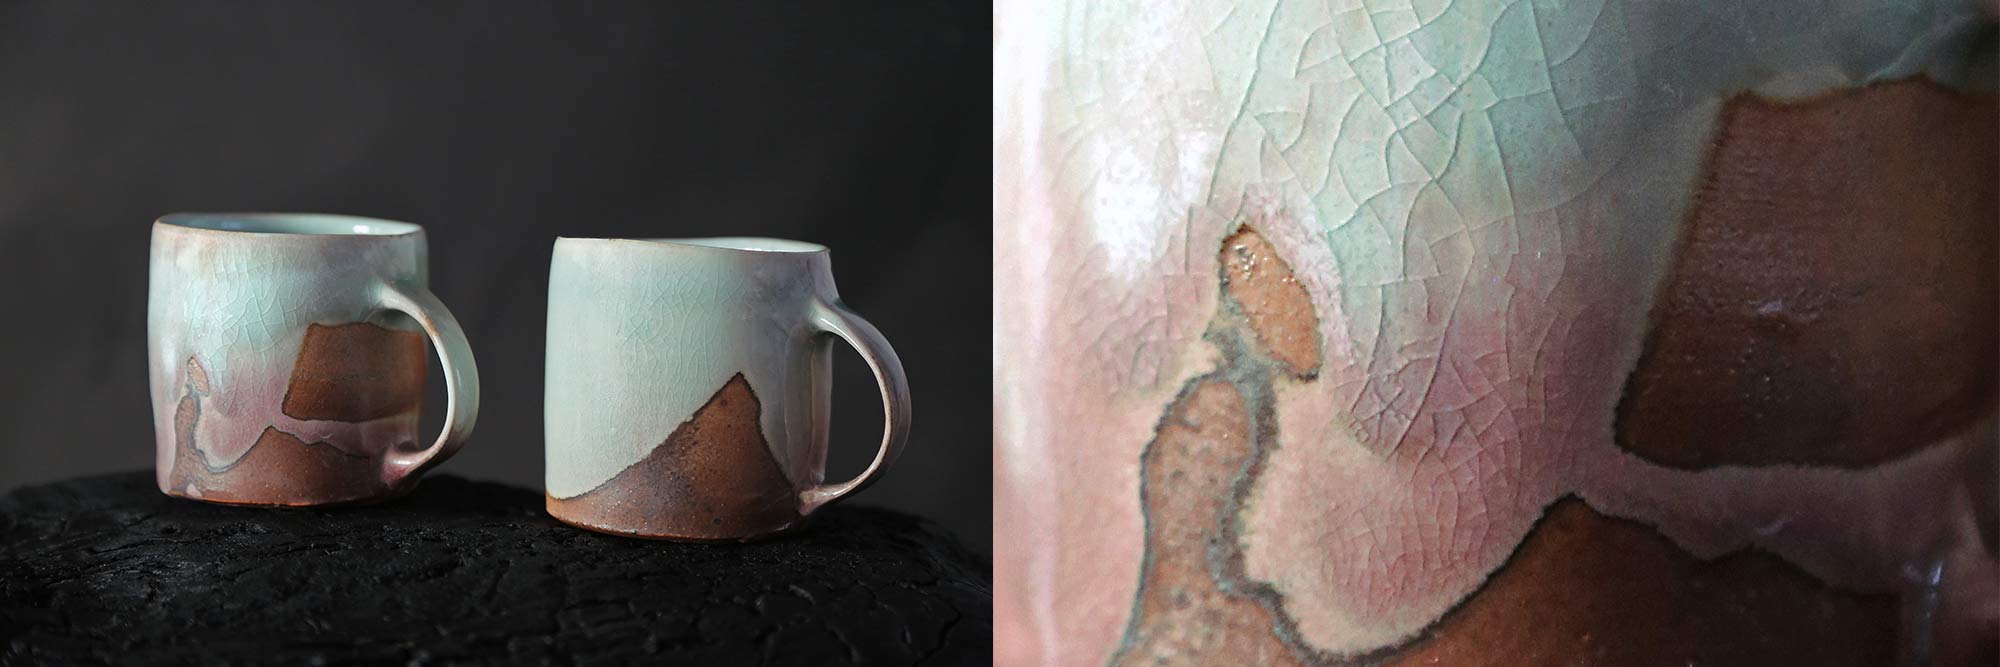 John Mackenzie Ceramic mug and glaze